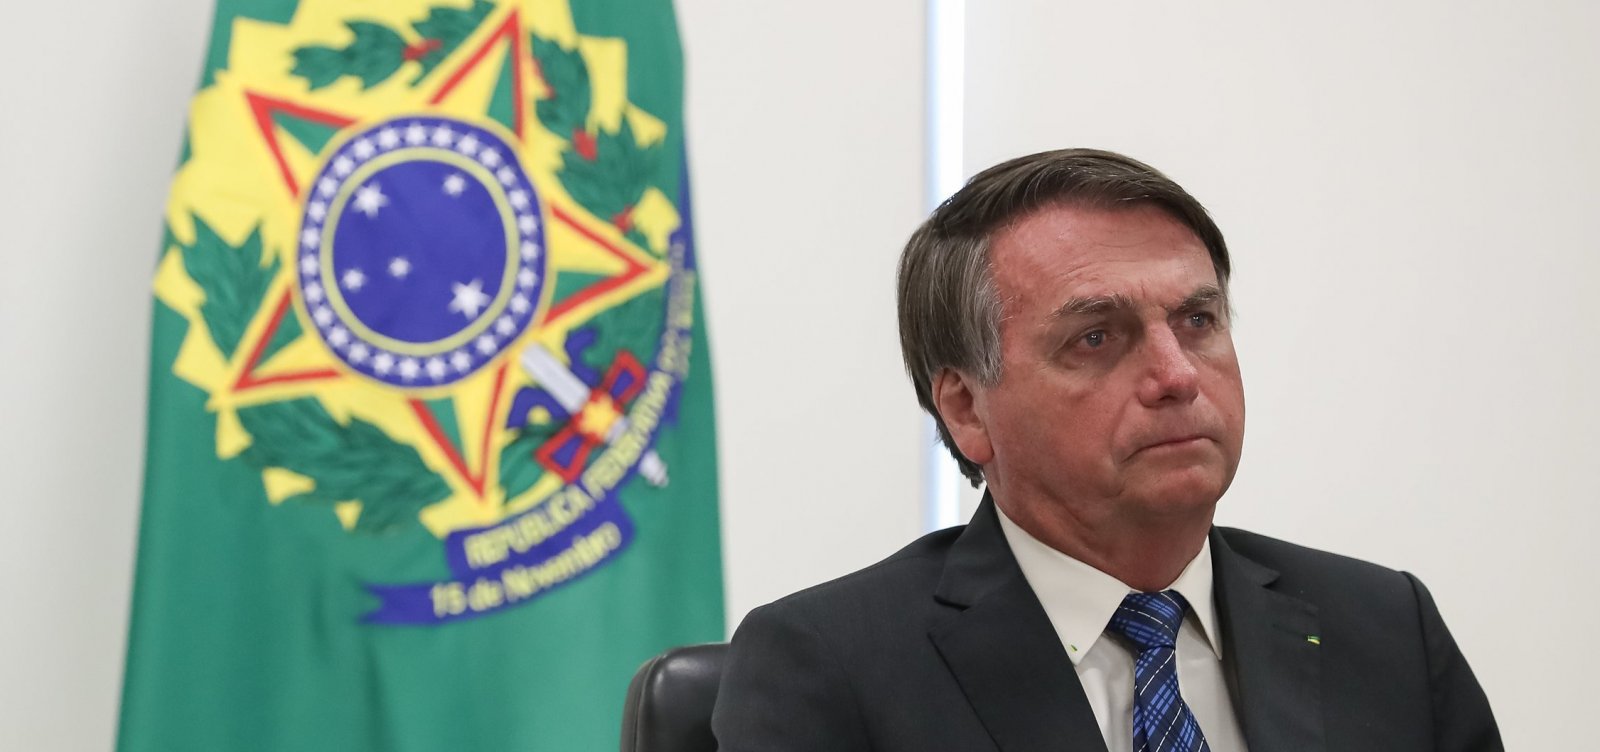 Após 150 mil mortes no Brasil, Bolsonaro diz que pandemia de Covid-19 foi 'superdimensionada'